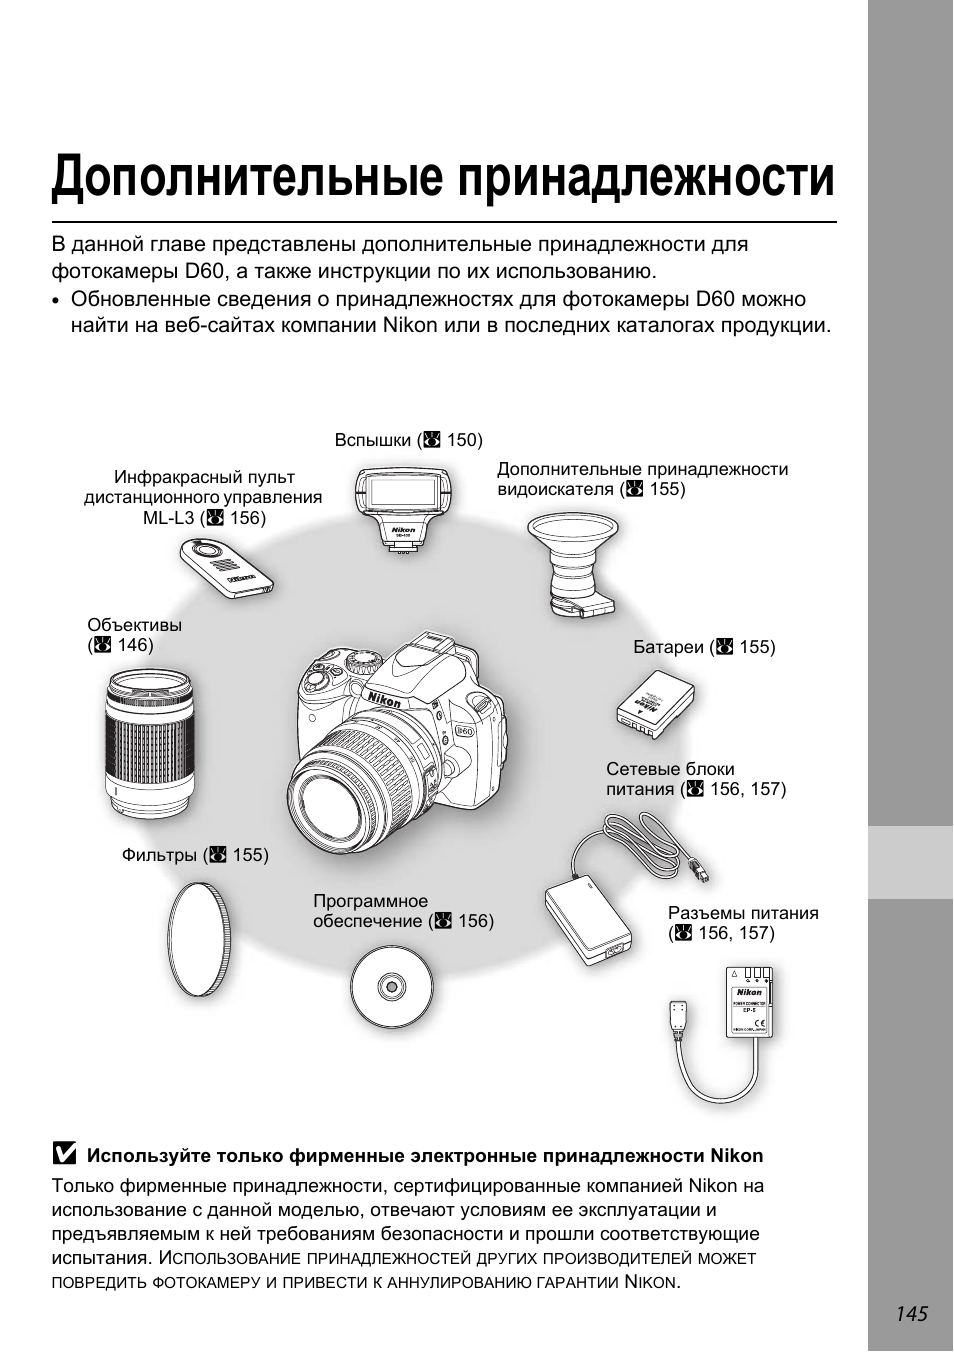 Дополнительные принадлежности, Дополнительные принадлежности» (a 145) | Инструкция по эксплуатации Nikon D60 | Страница 157 / 204